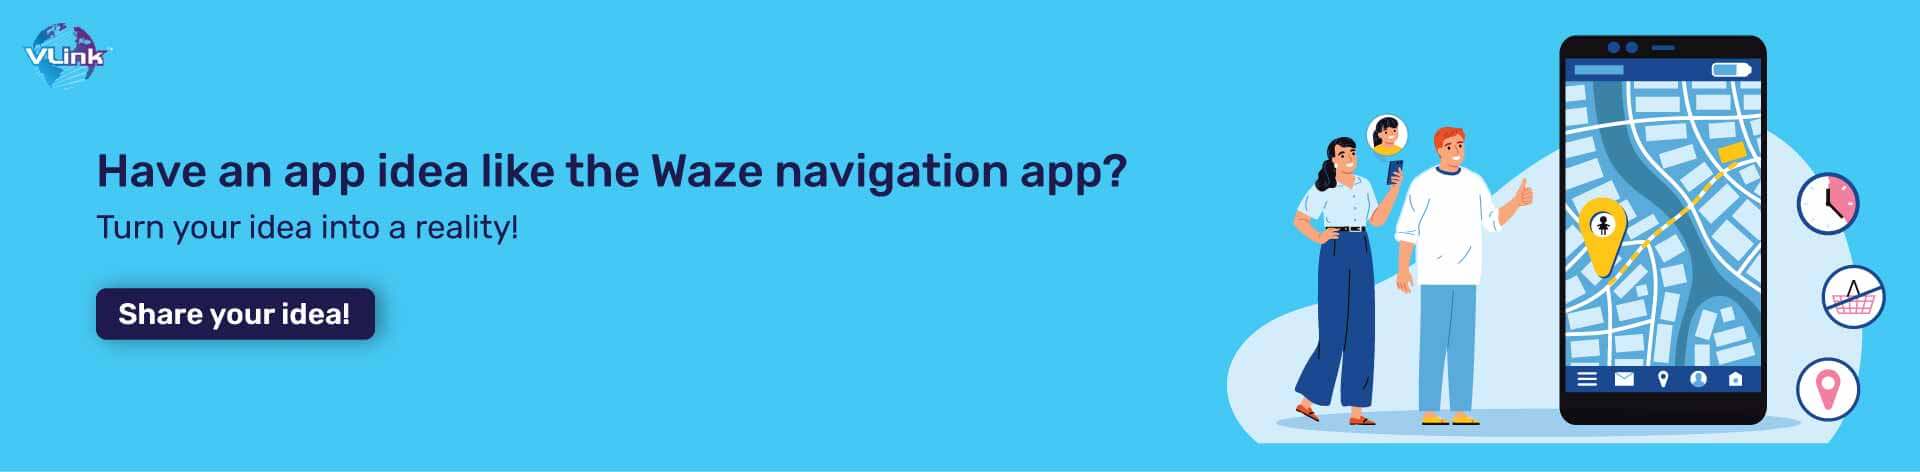 cost-to-create-a-navigation-app-like-waze-cta1